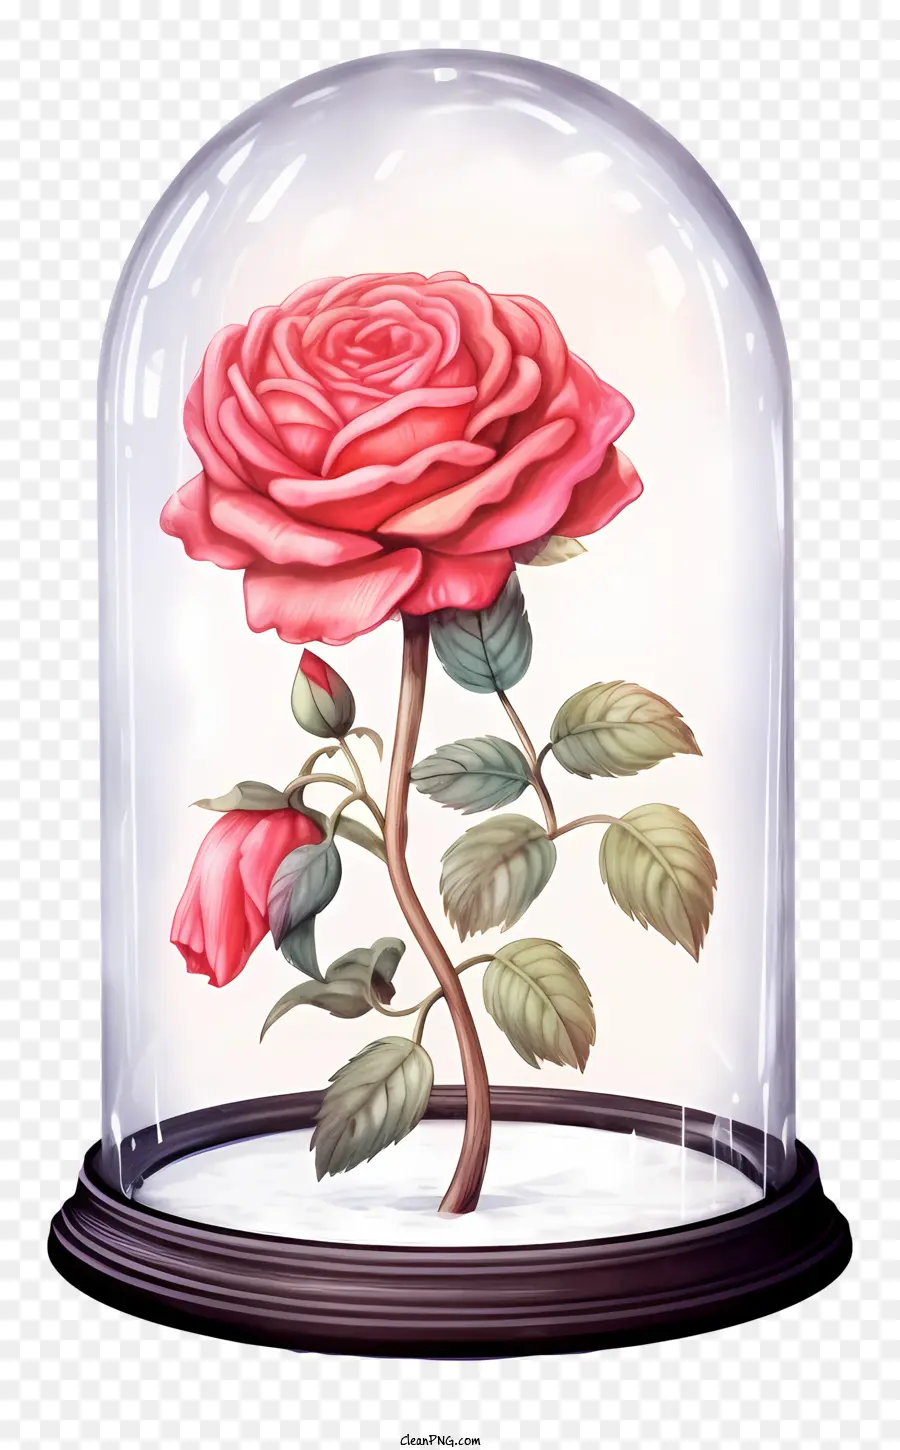 hoa hồng màu hồng - Cận cảnh hoa hồng hồng trong lọ chuông thủy tinh